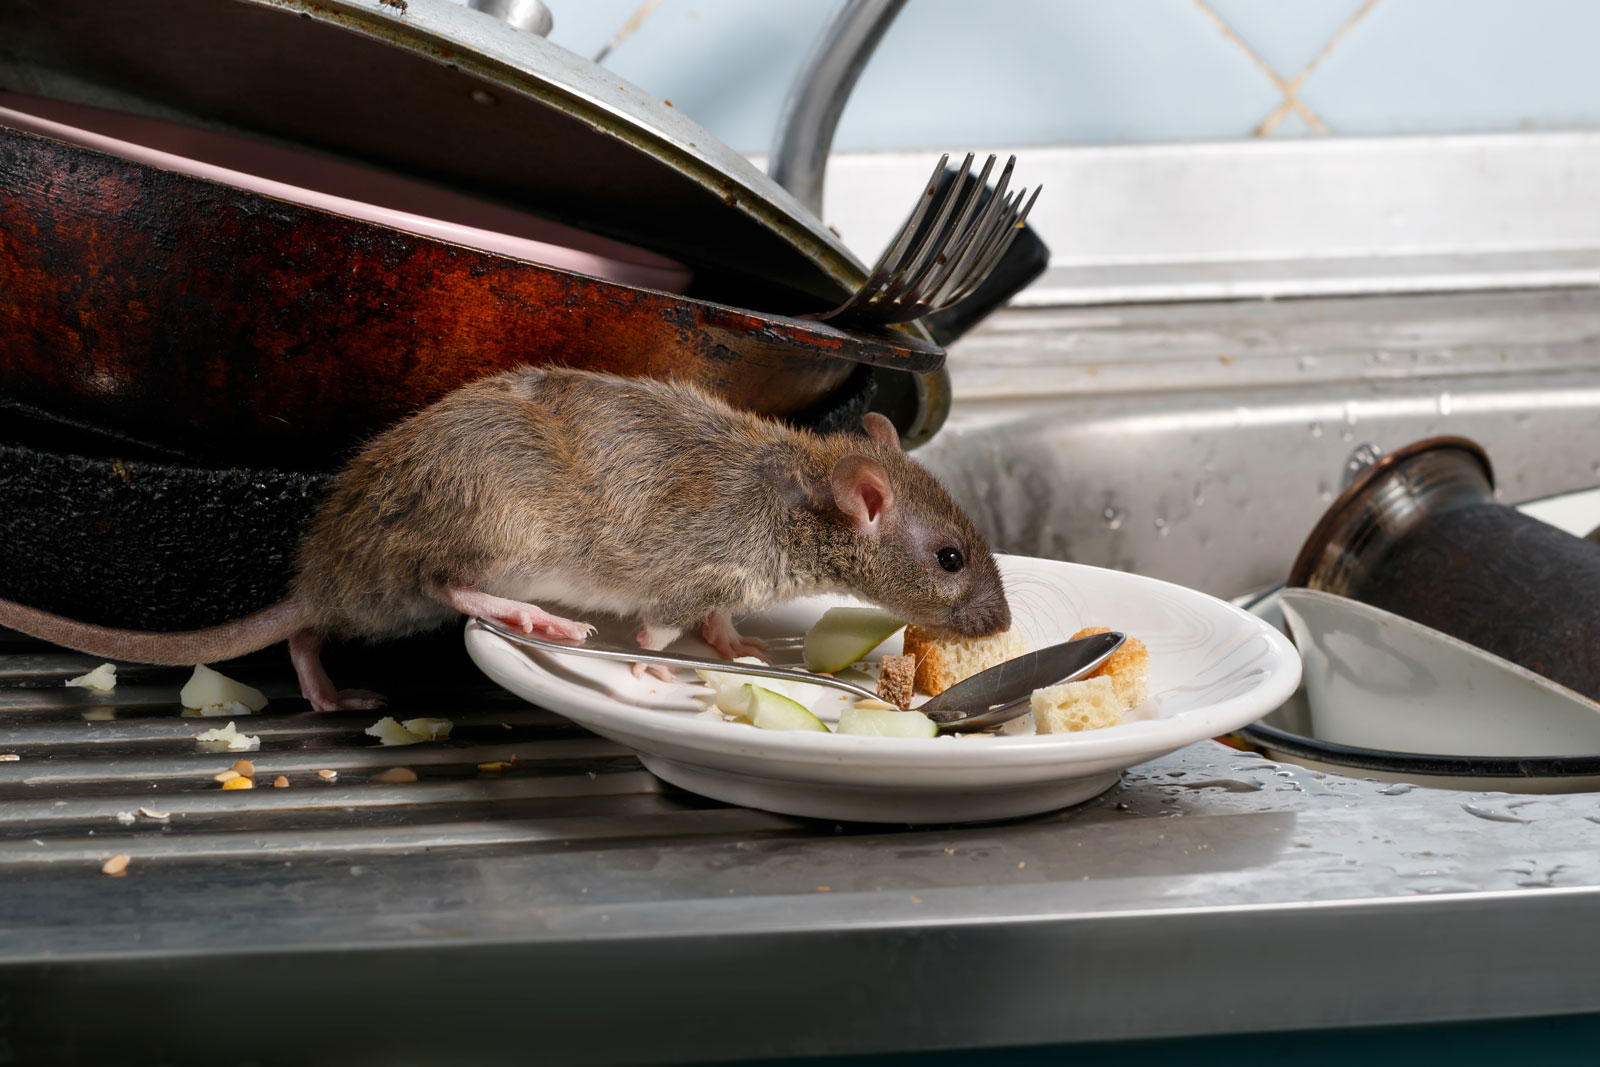 Rat in kitchen